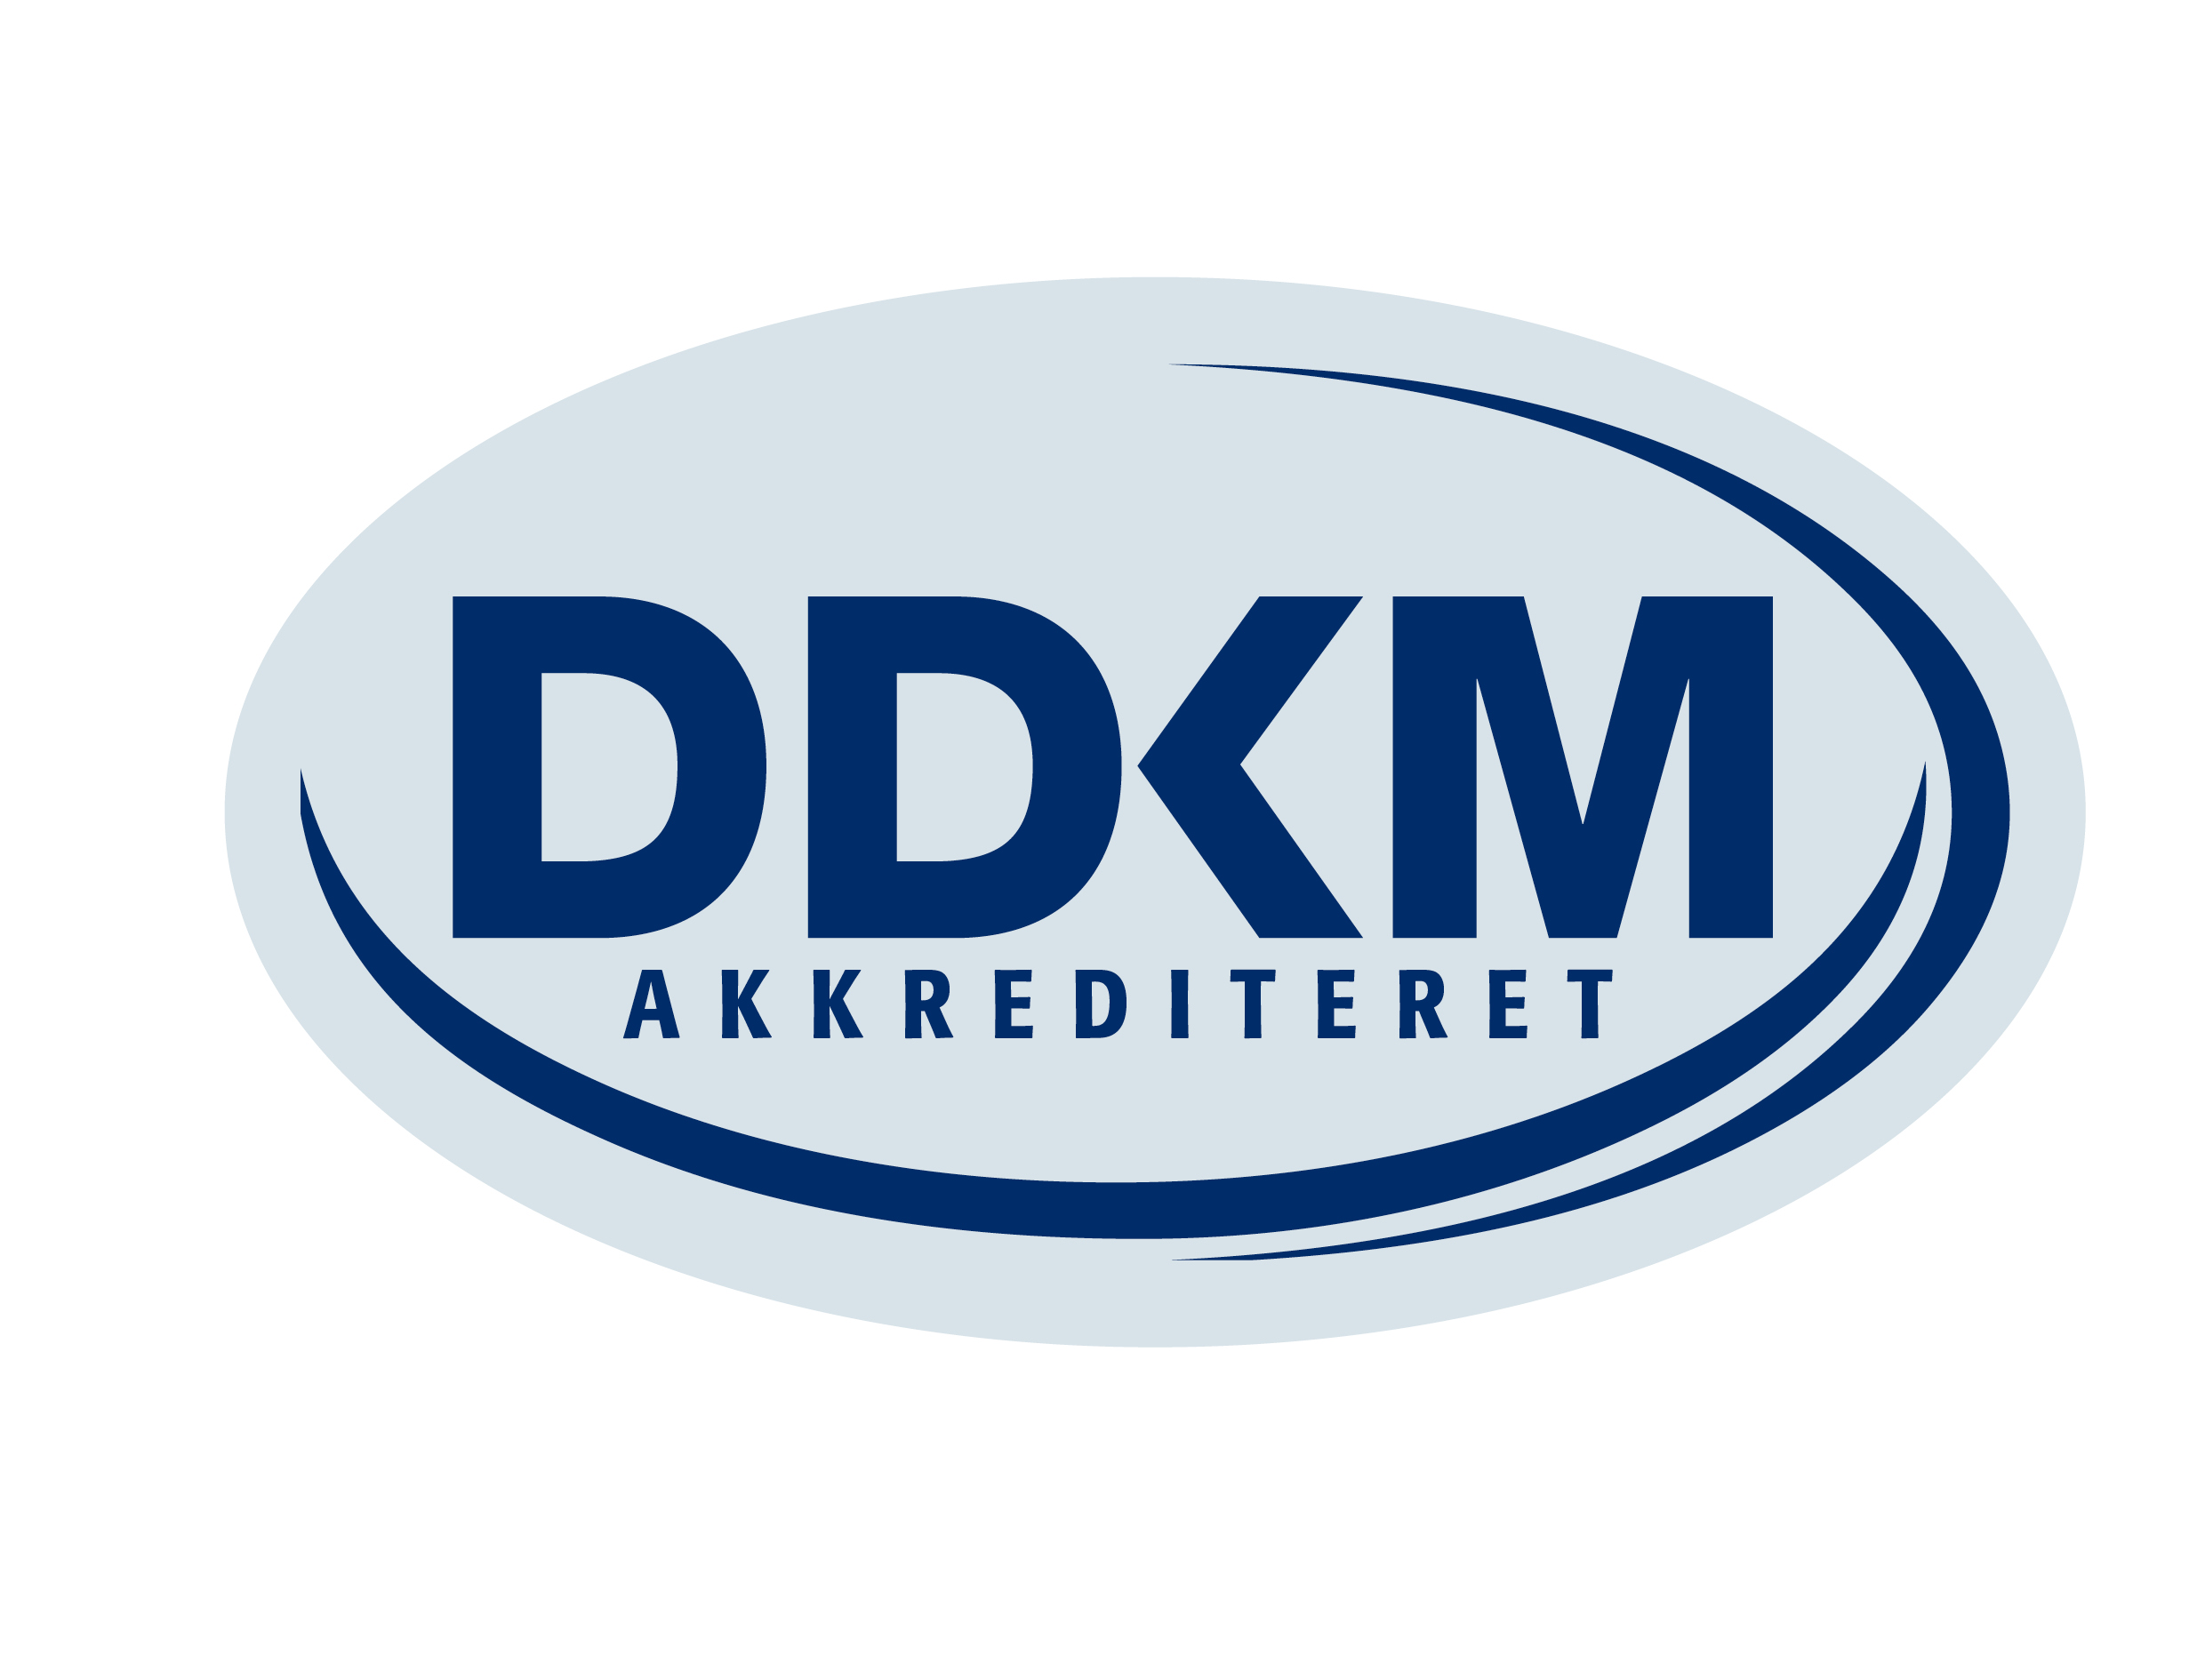 DDKM akkrediteret logo, stort logo, jpg